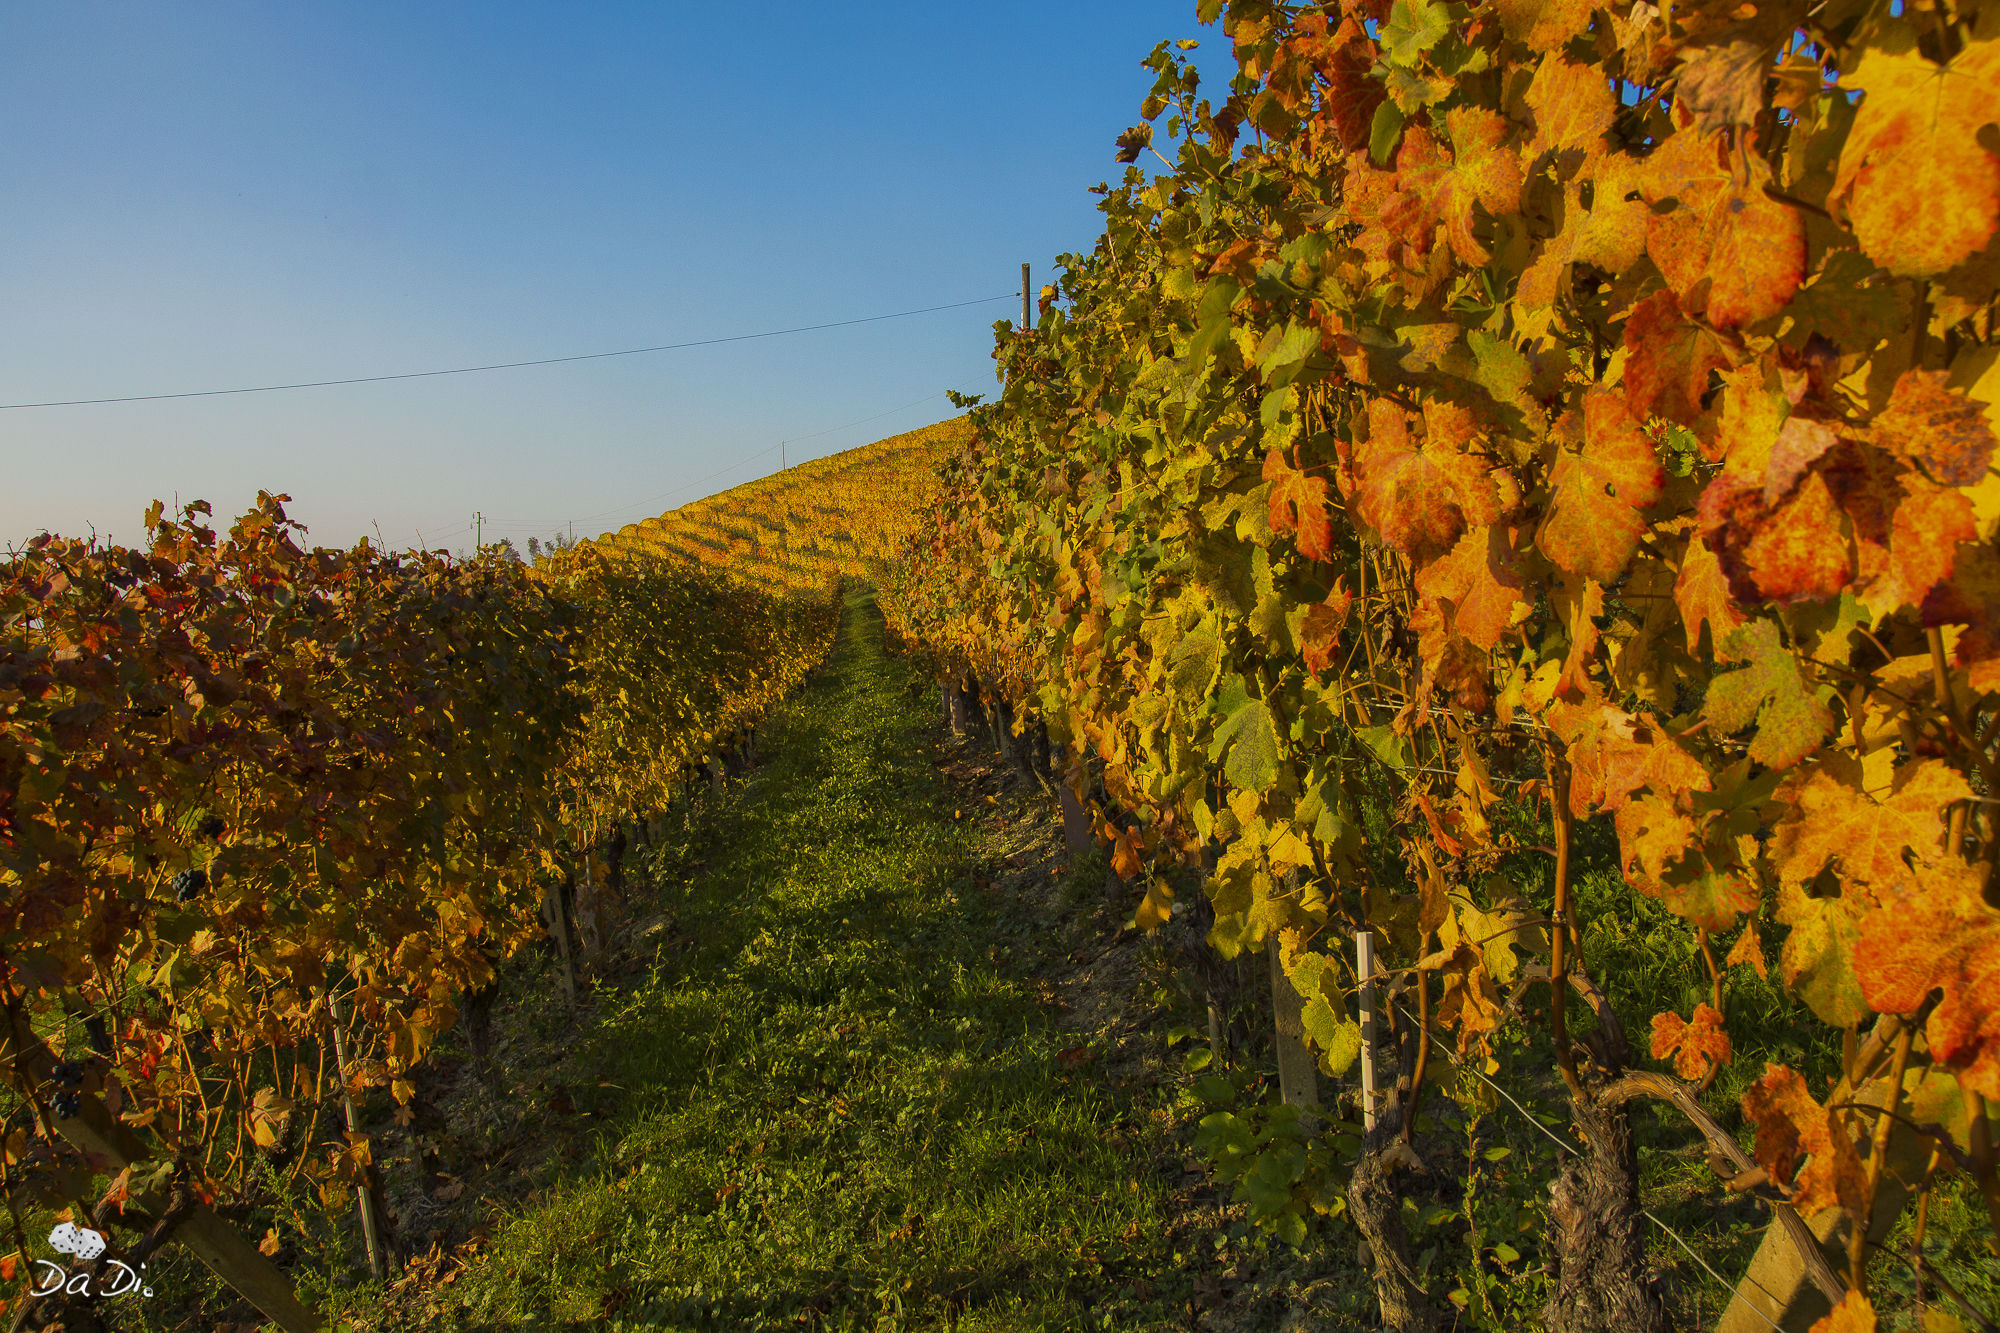 Vineyards in autumn...